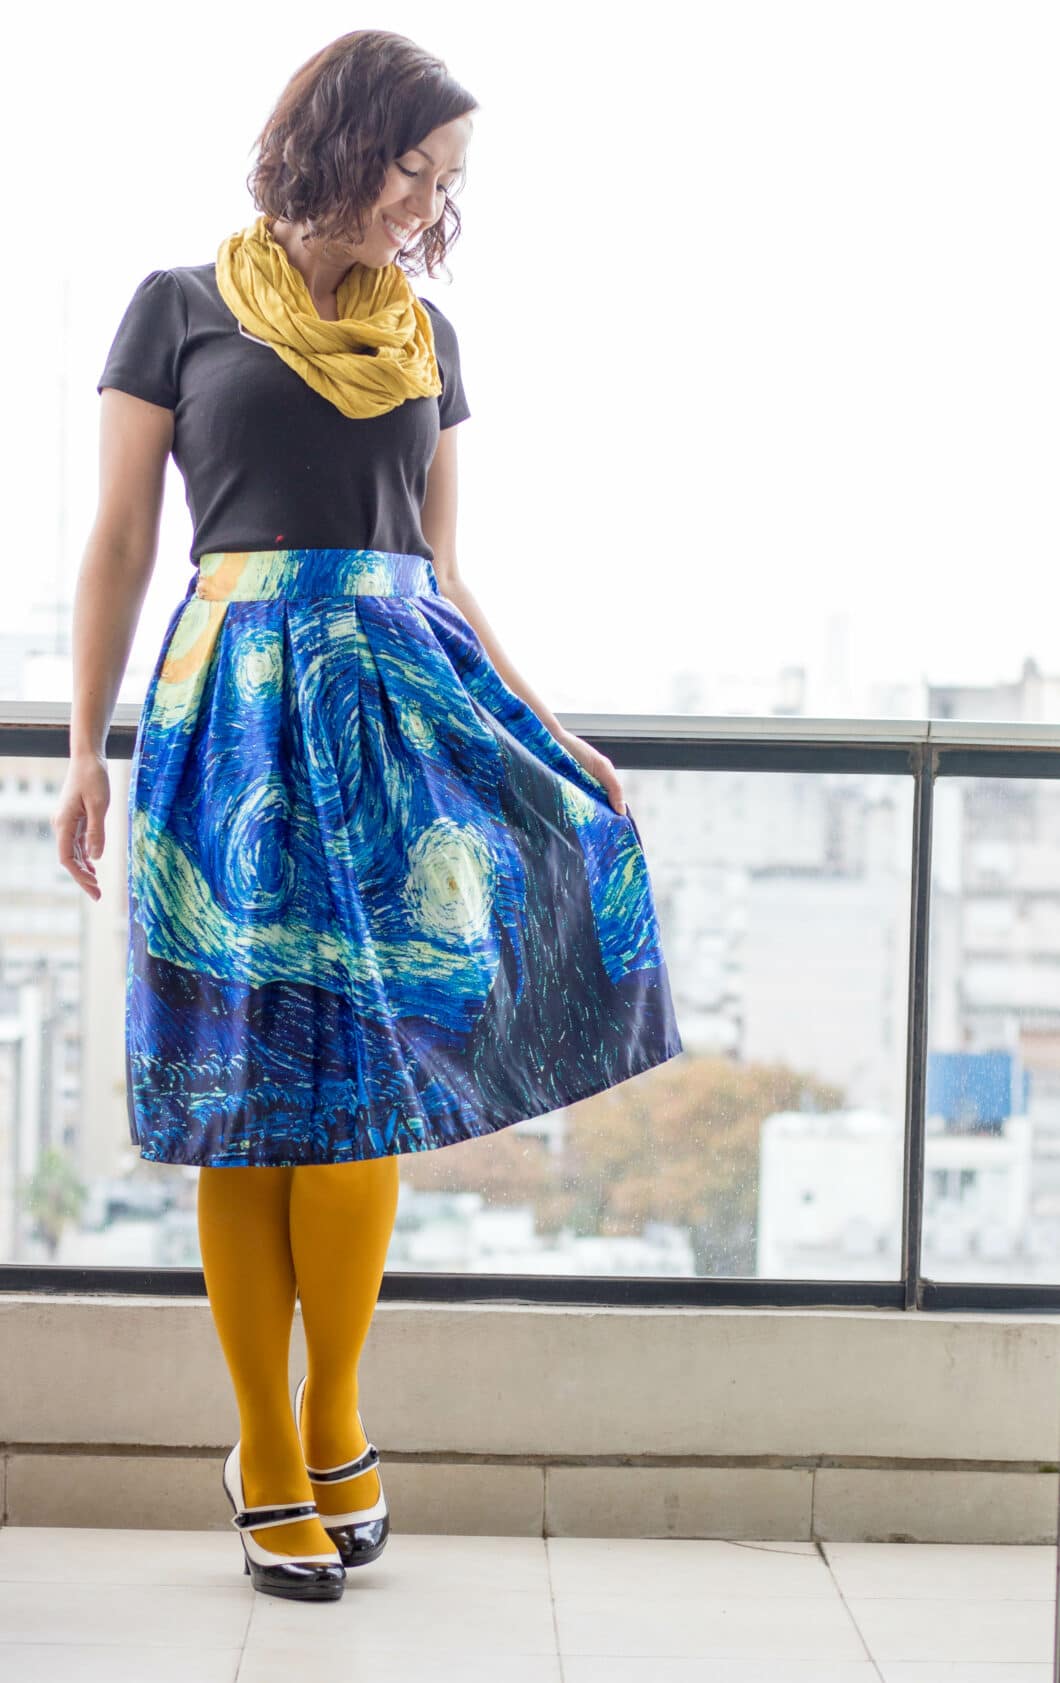 Starry night skirt